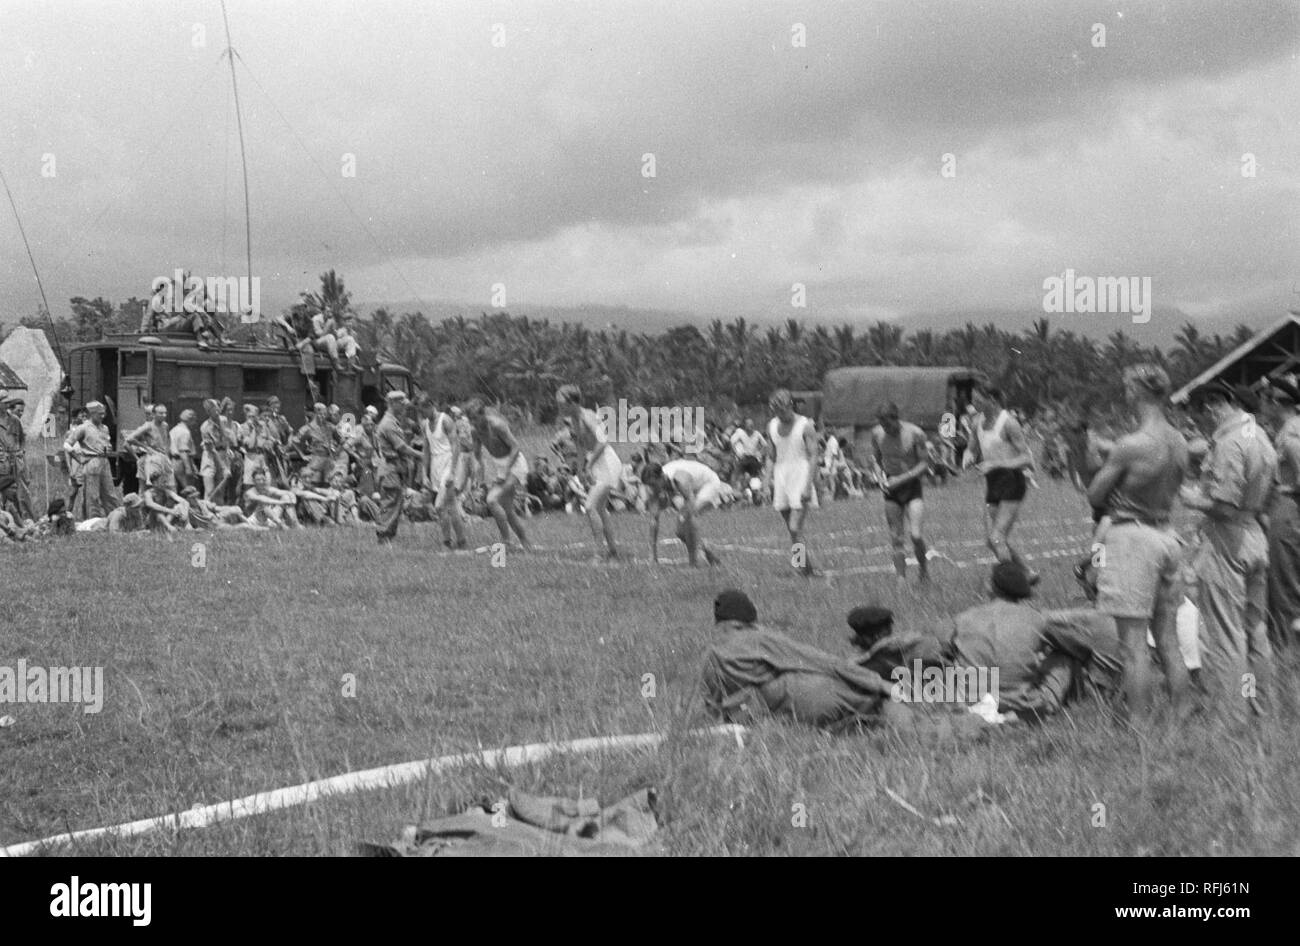 Atletiekwedstrijd Op De Bult te Salatiga op 10 maart 1948 Bestanddeelnr 1578-3-1. Stockfoto